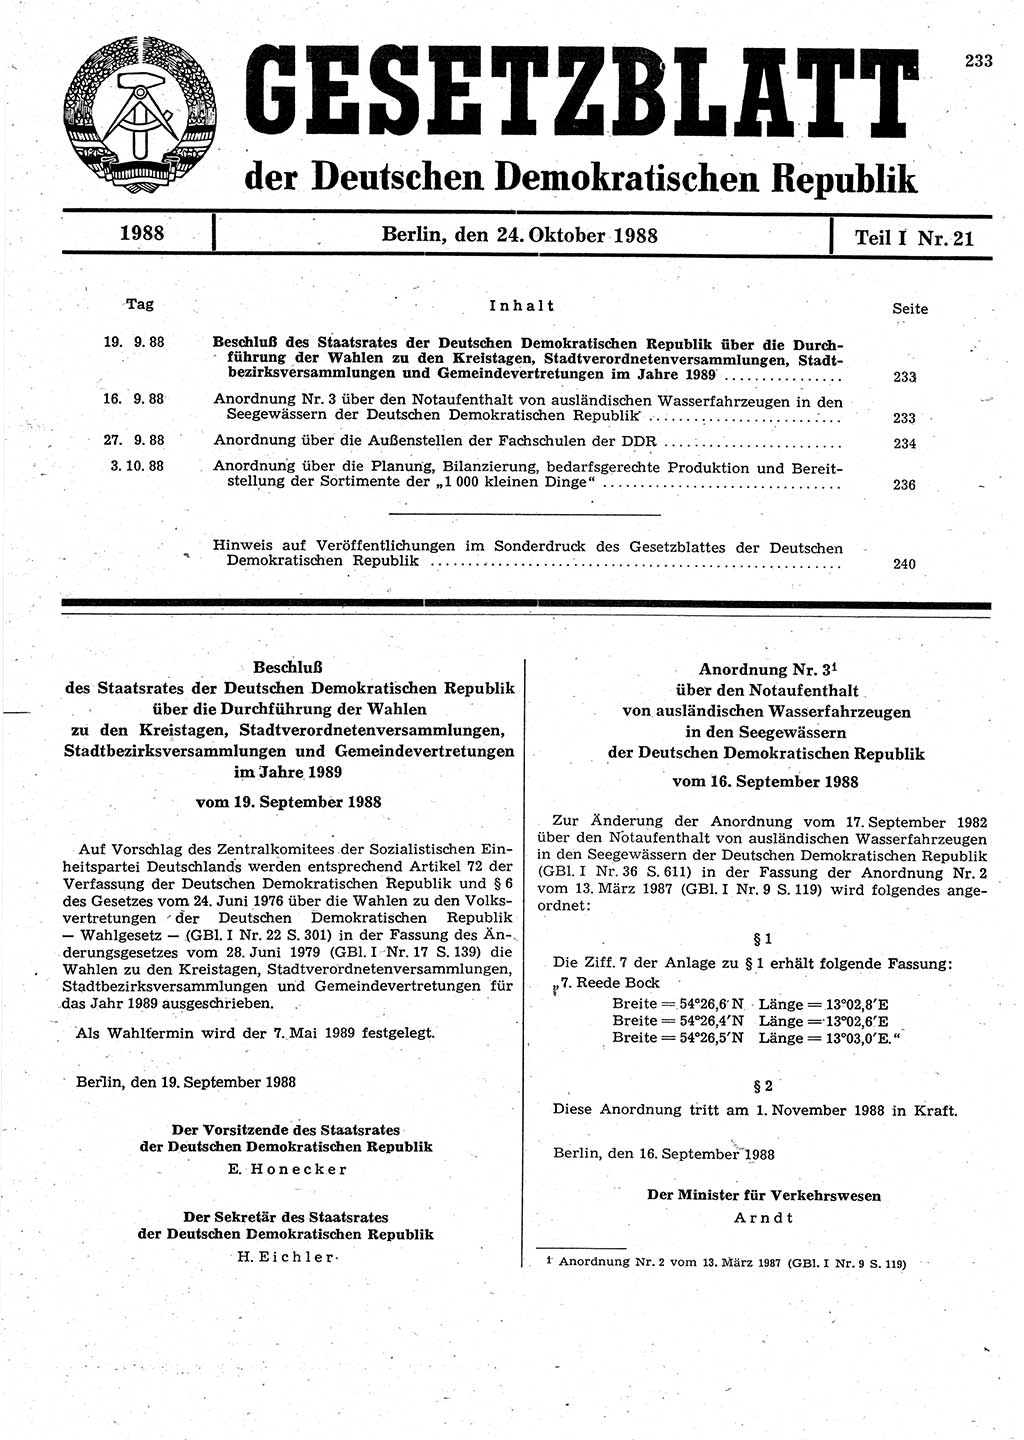 Gesetzblatt (GBl.) der Deutschen Demokratischen Republik (DDR) Teil Ⅰ 1988, Seite 233 (GBl. DDR Ⅰ 1988, S. 233)